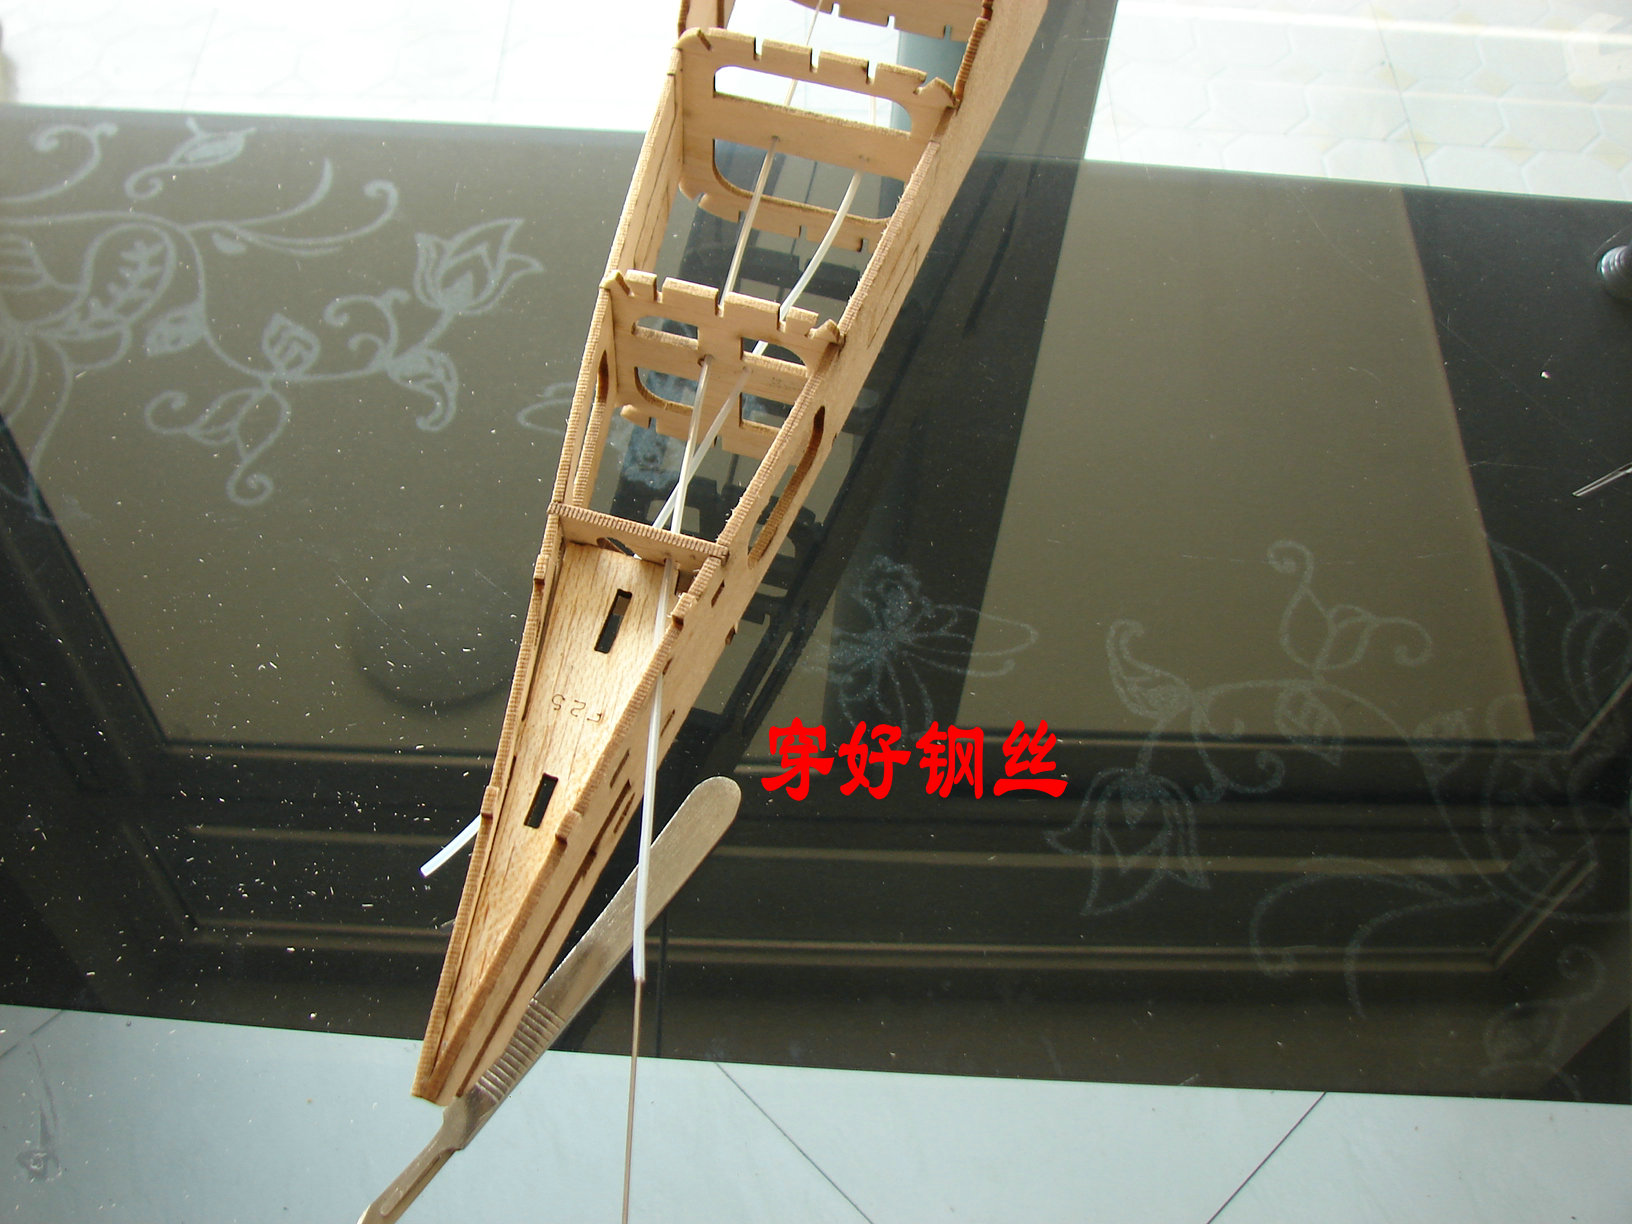 轻木塞斯纳182套材组装教程 给大家参考用图很多 塞斯纳,轻木,轻木哪里有卖 作者:wengchuankuo 8358 